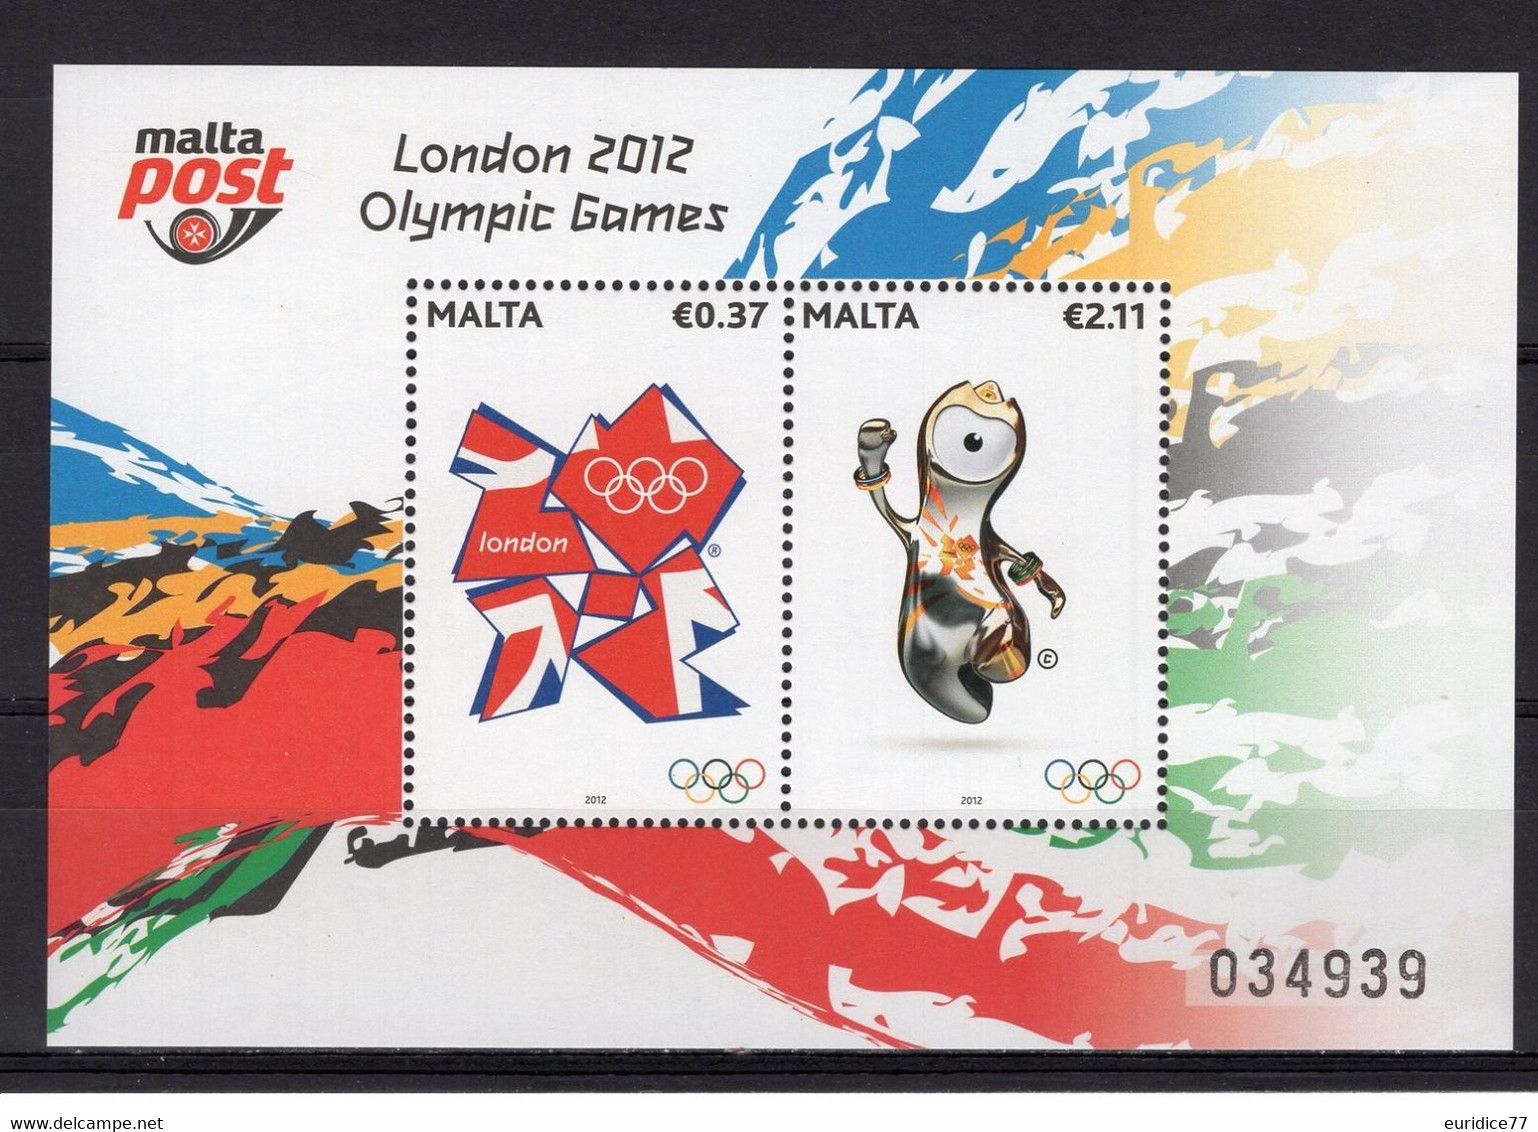 Malta 2012 - London Olympic Games 2012 Souvenir Sheet Mnh - Estate 2012: London